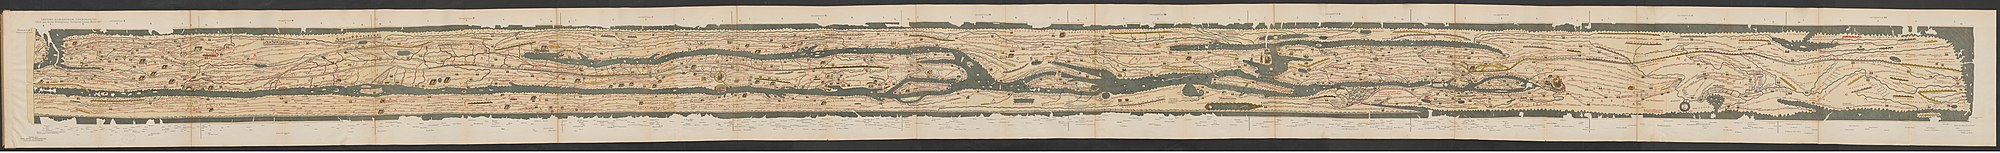 A teljes Tabula Peutingeriana, az ókori Mediterráneum és a Római Birodalom úthálózatának térképe